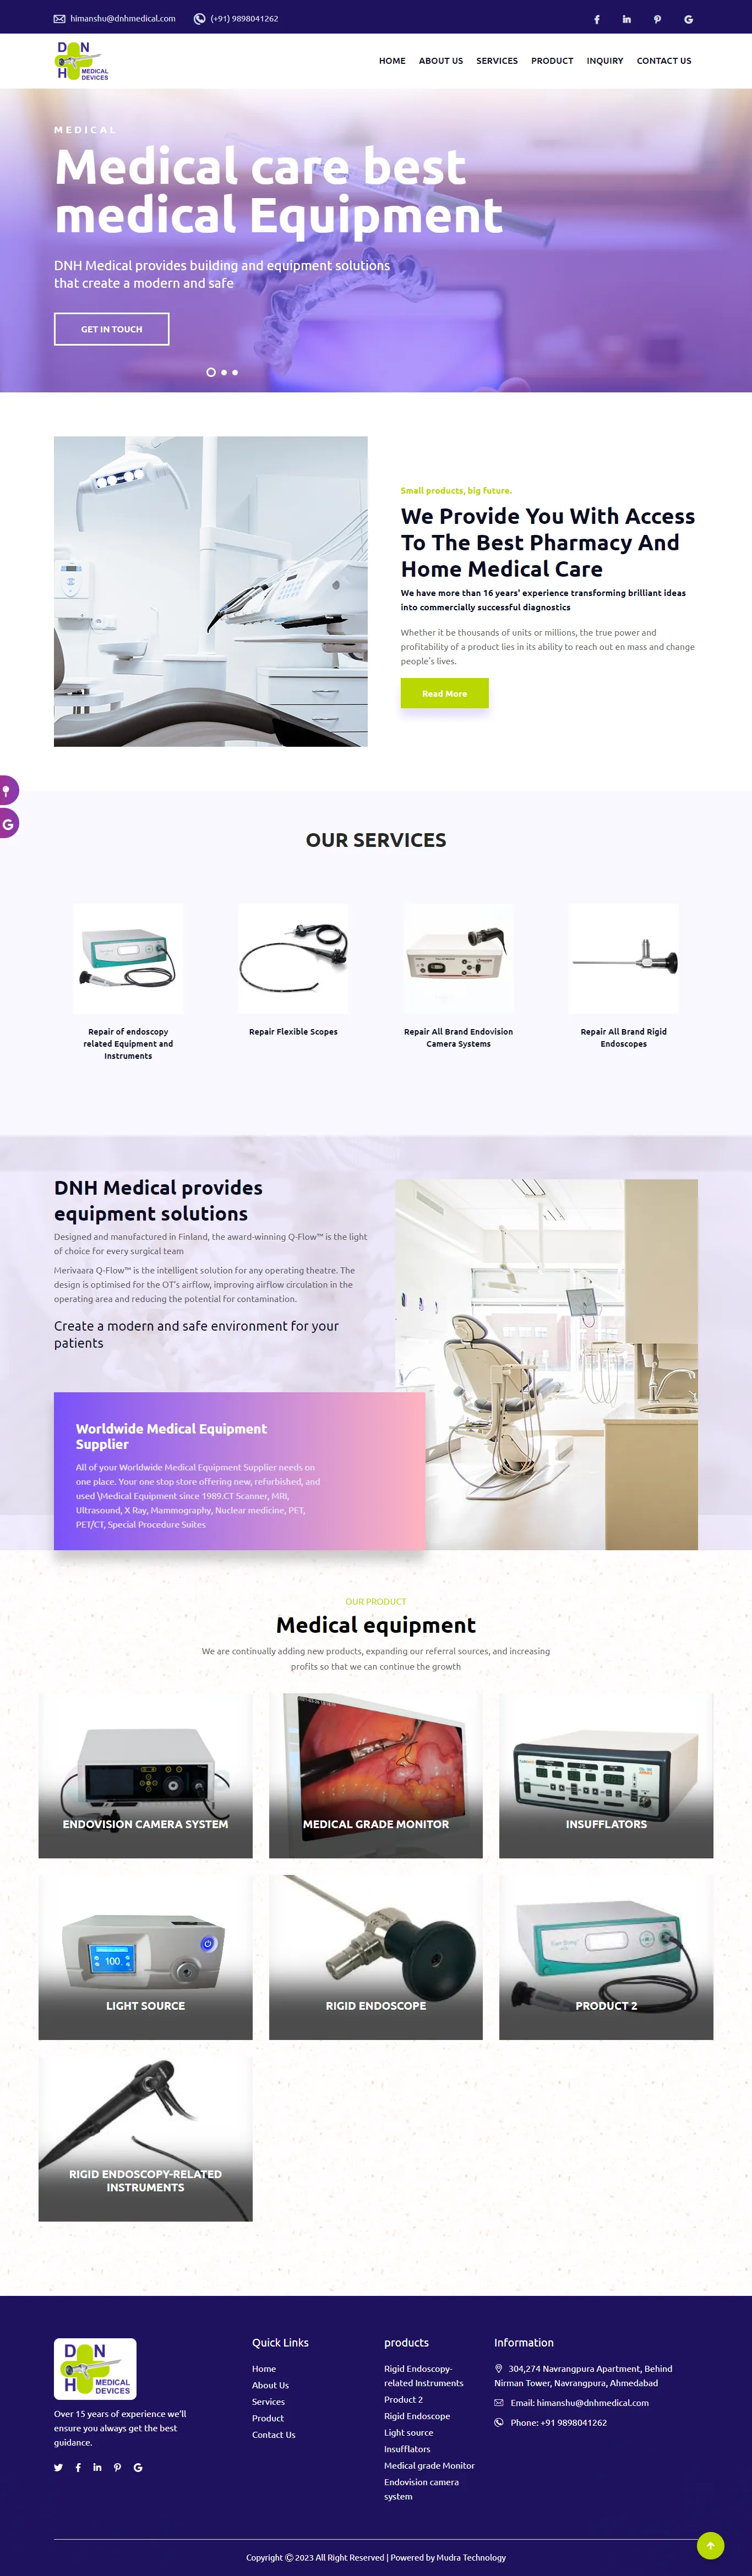 DNH Medical Website